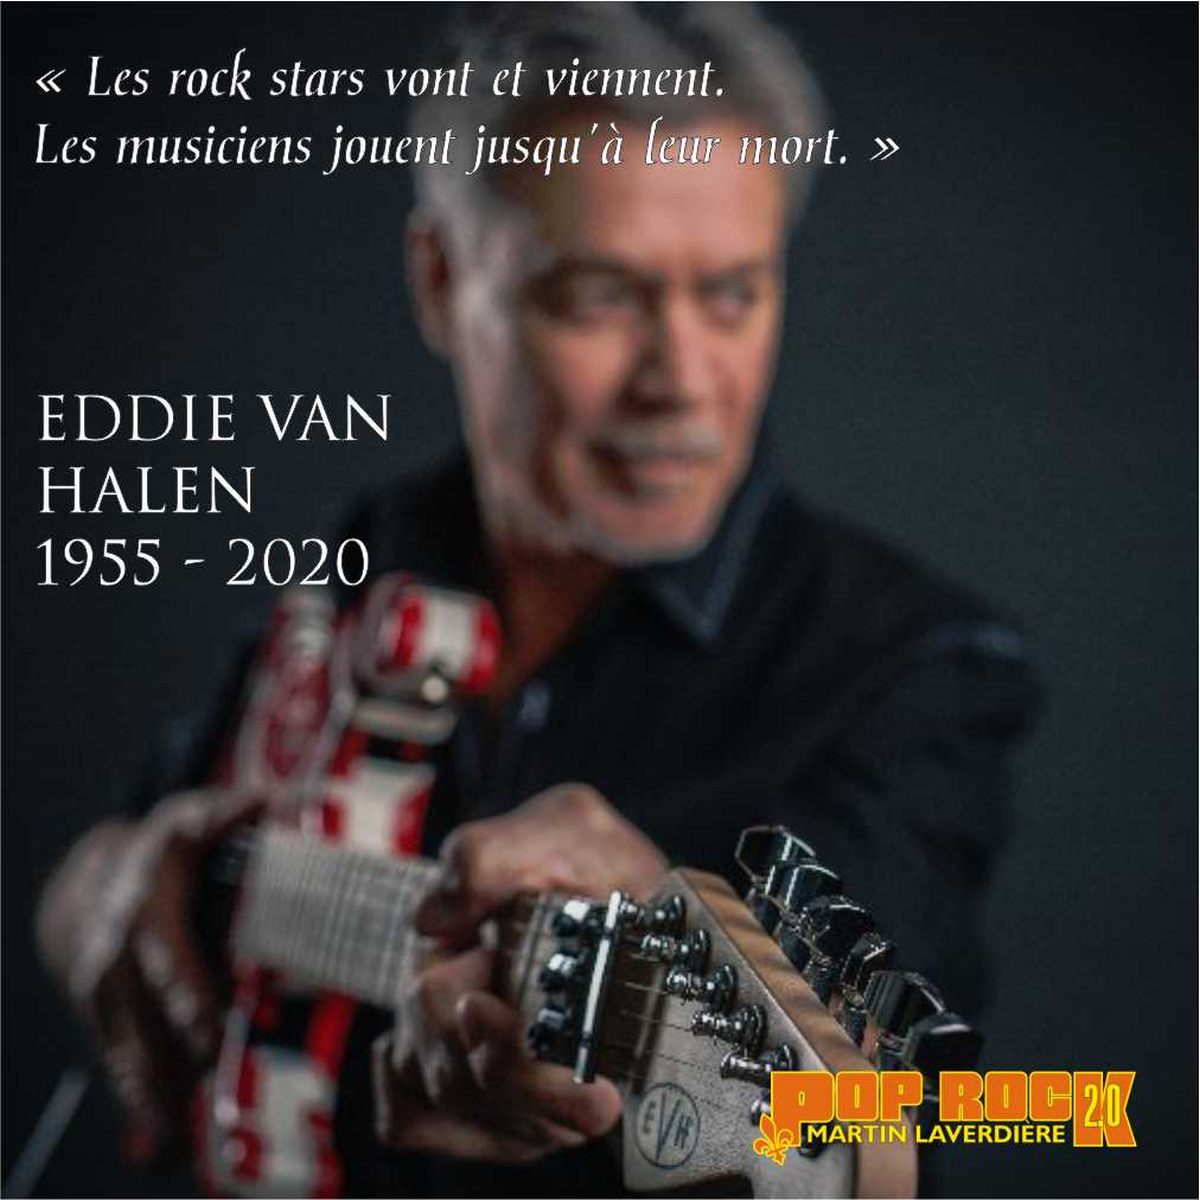 Le célèbre guitariste Eddie Van Halen s'éteint à 65 ans.